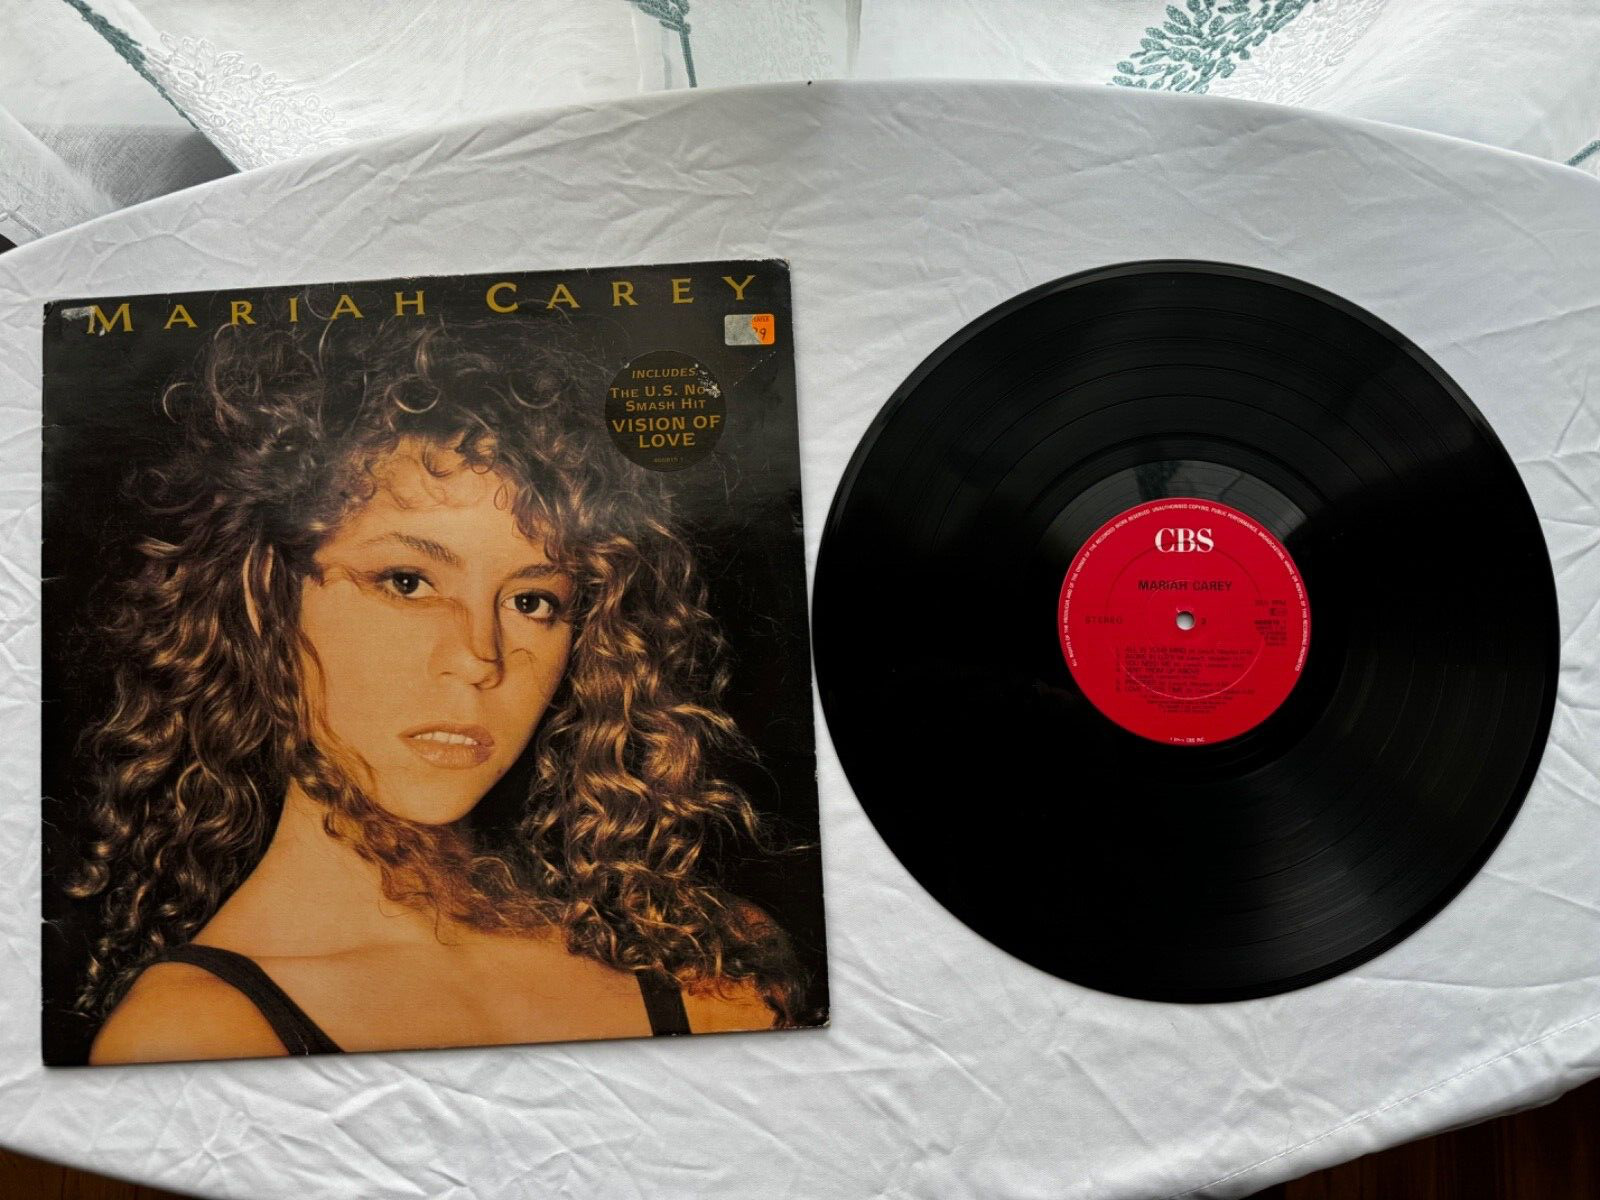 RARE 1990 FIRST UK PRESS - Mariah Carey “Mariah Carey” LP Vinyl CBS – 466815 1